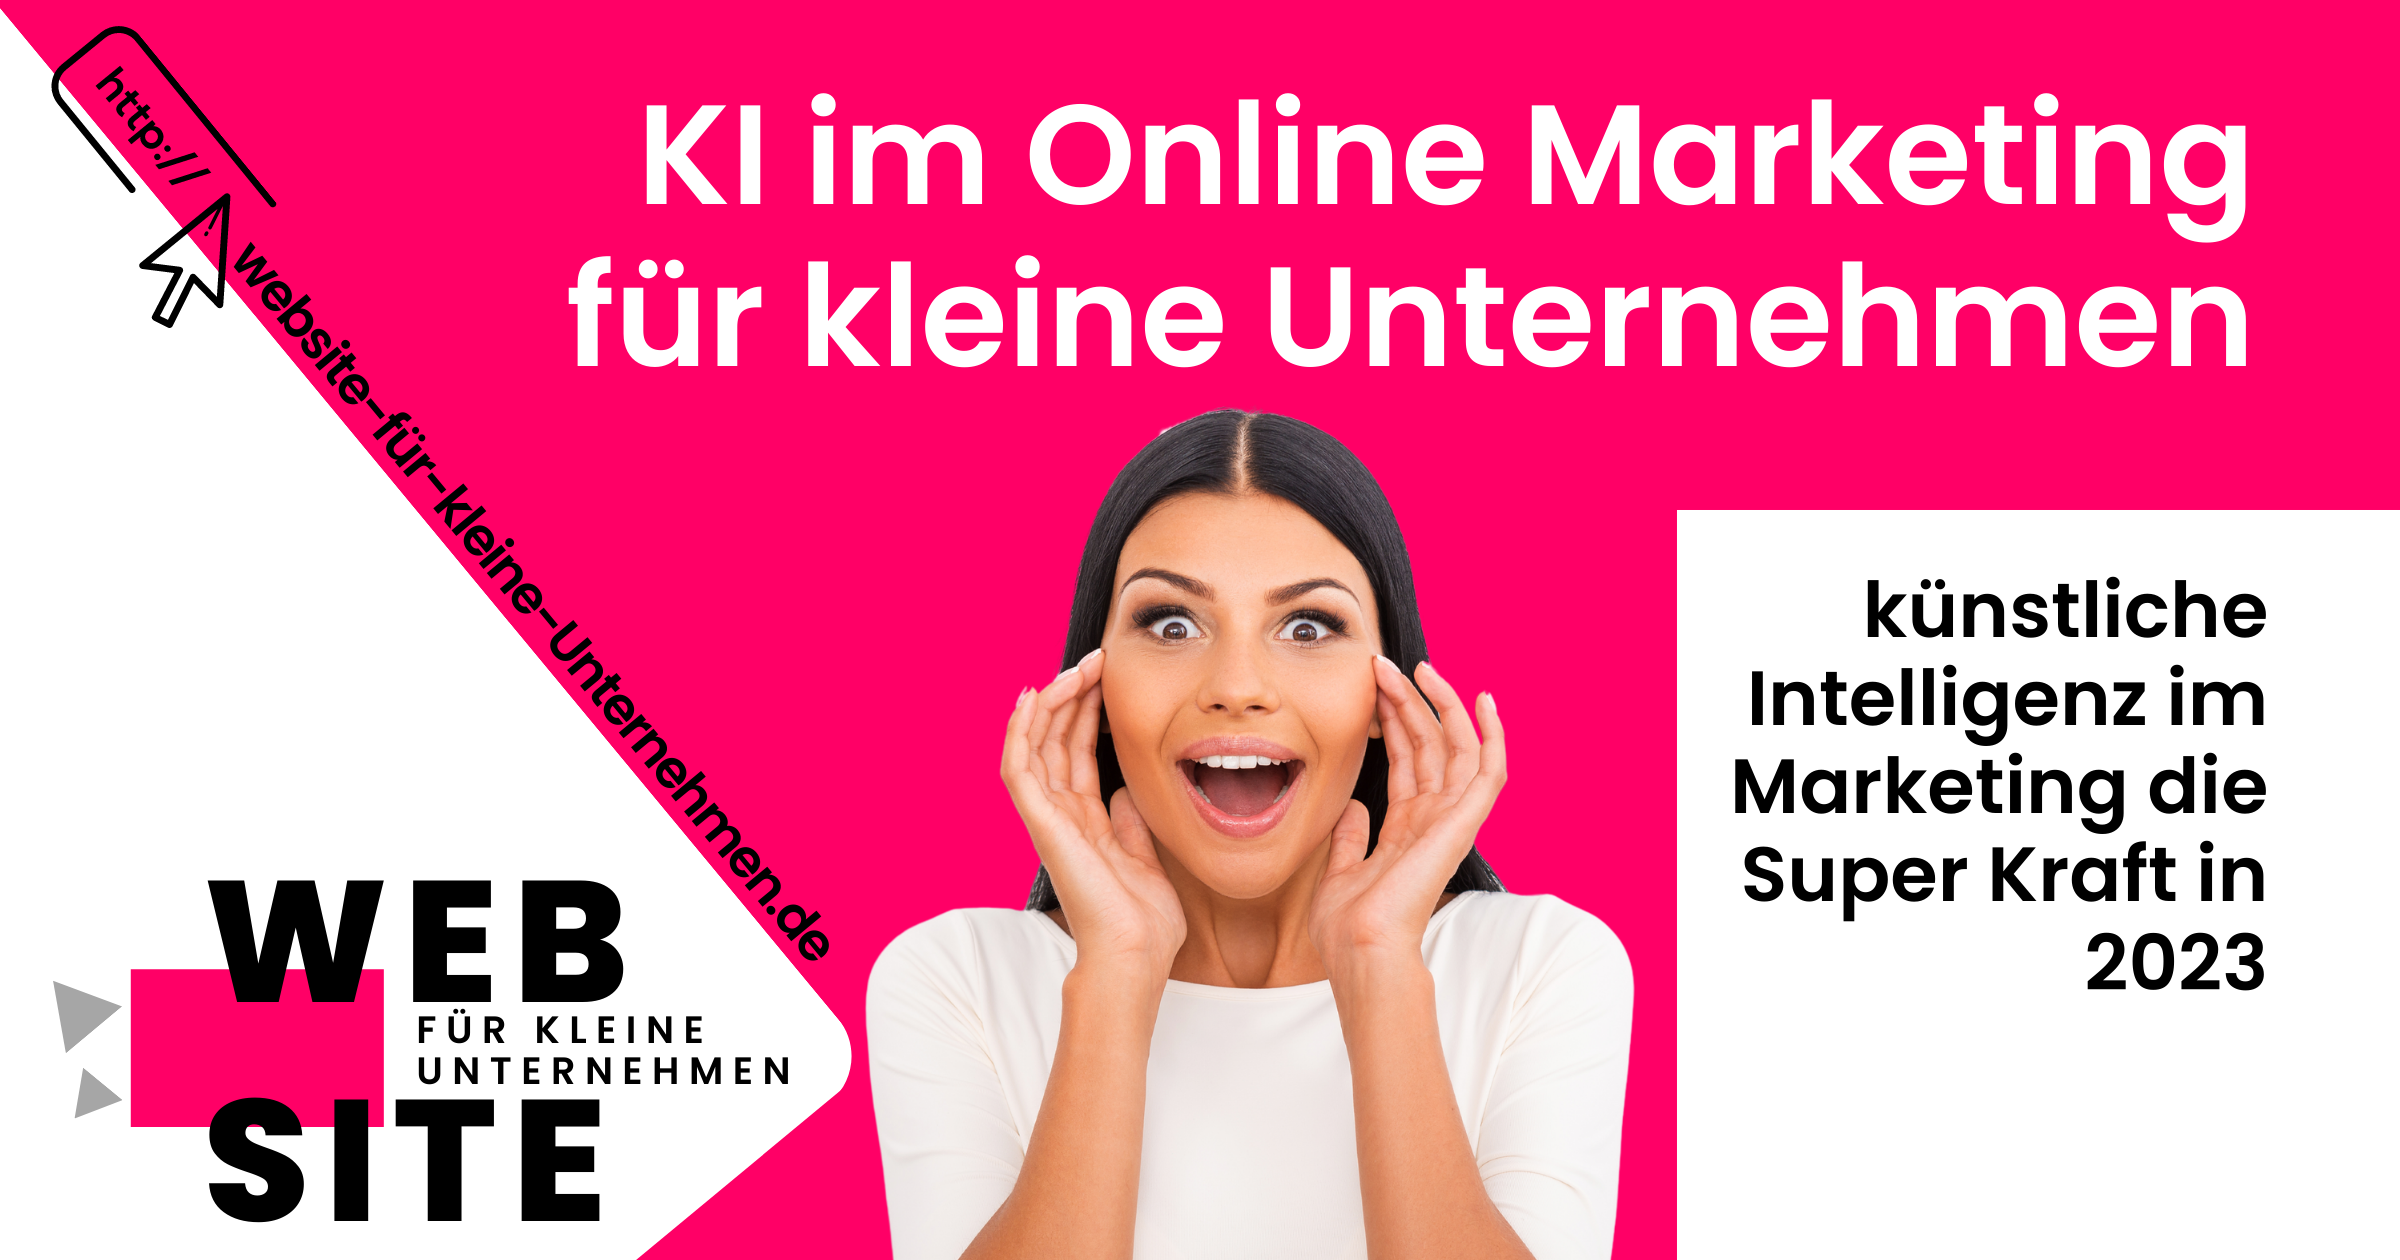 KI - künstliche Intelligenz im Online Marketing für Unternehmen - Die Super Kraft 2023 - featured image